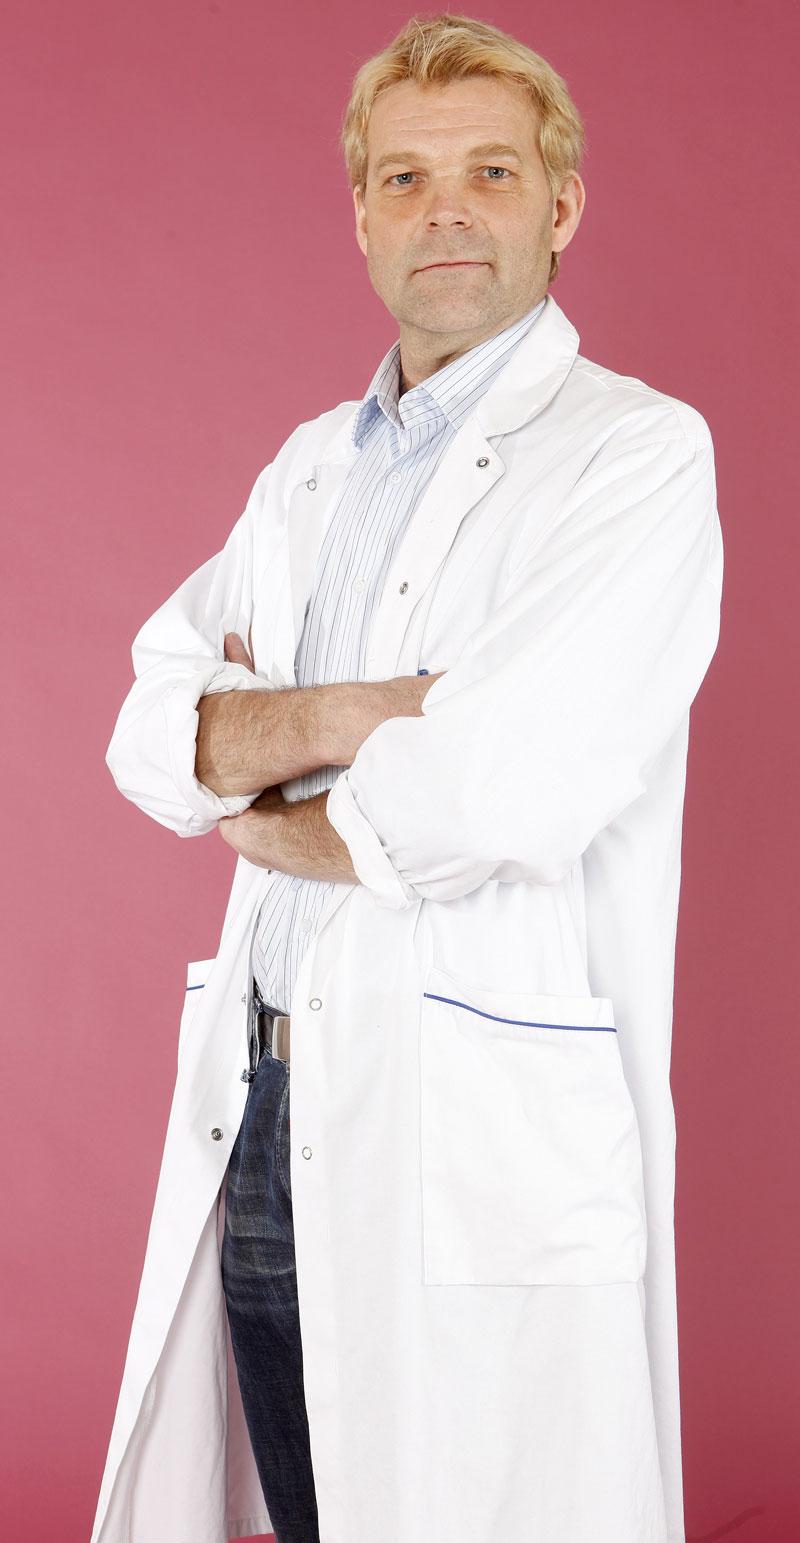 Stefan Branth är specialist i invärtesmedicin och överläkare vid Akademiska sjukhuset i Uppsala.